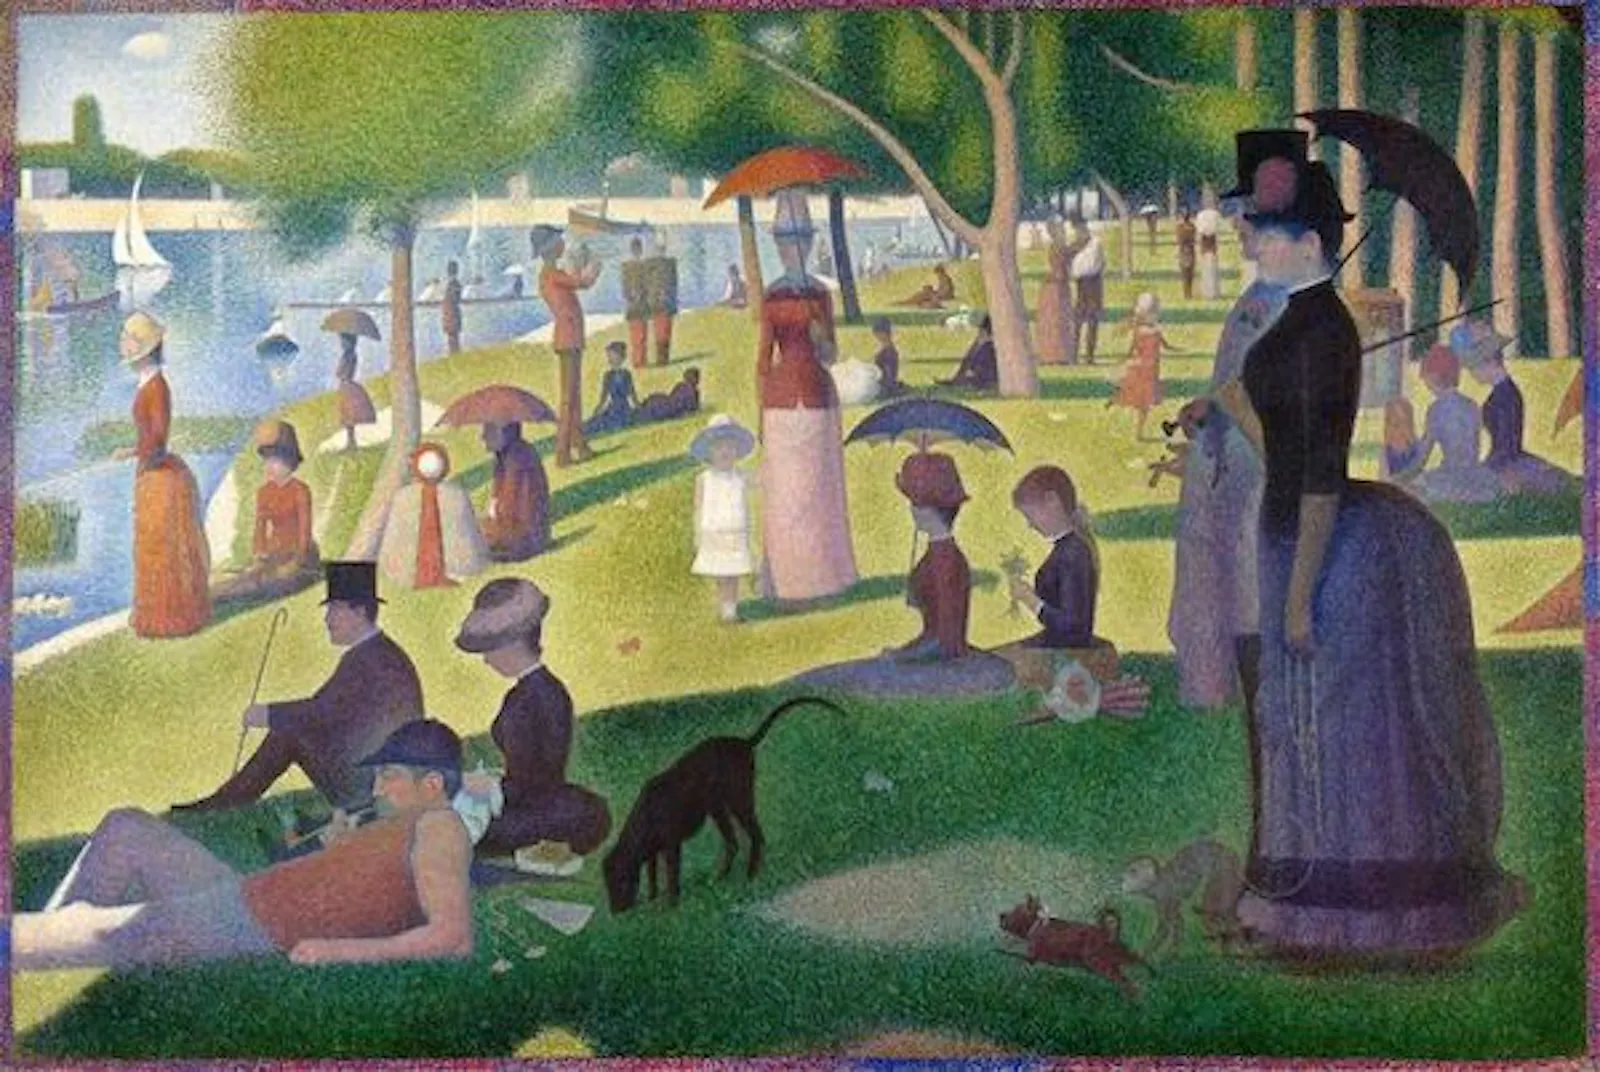 Obra de Seurat en la que gente del siglo 19 pasea o esta sentada frente a un lago. Hecha con estilo puntillista